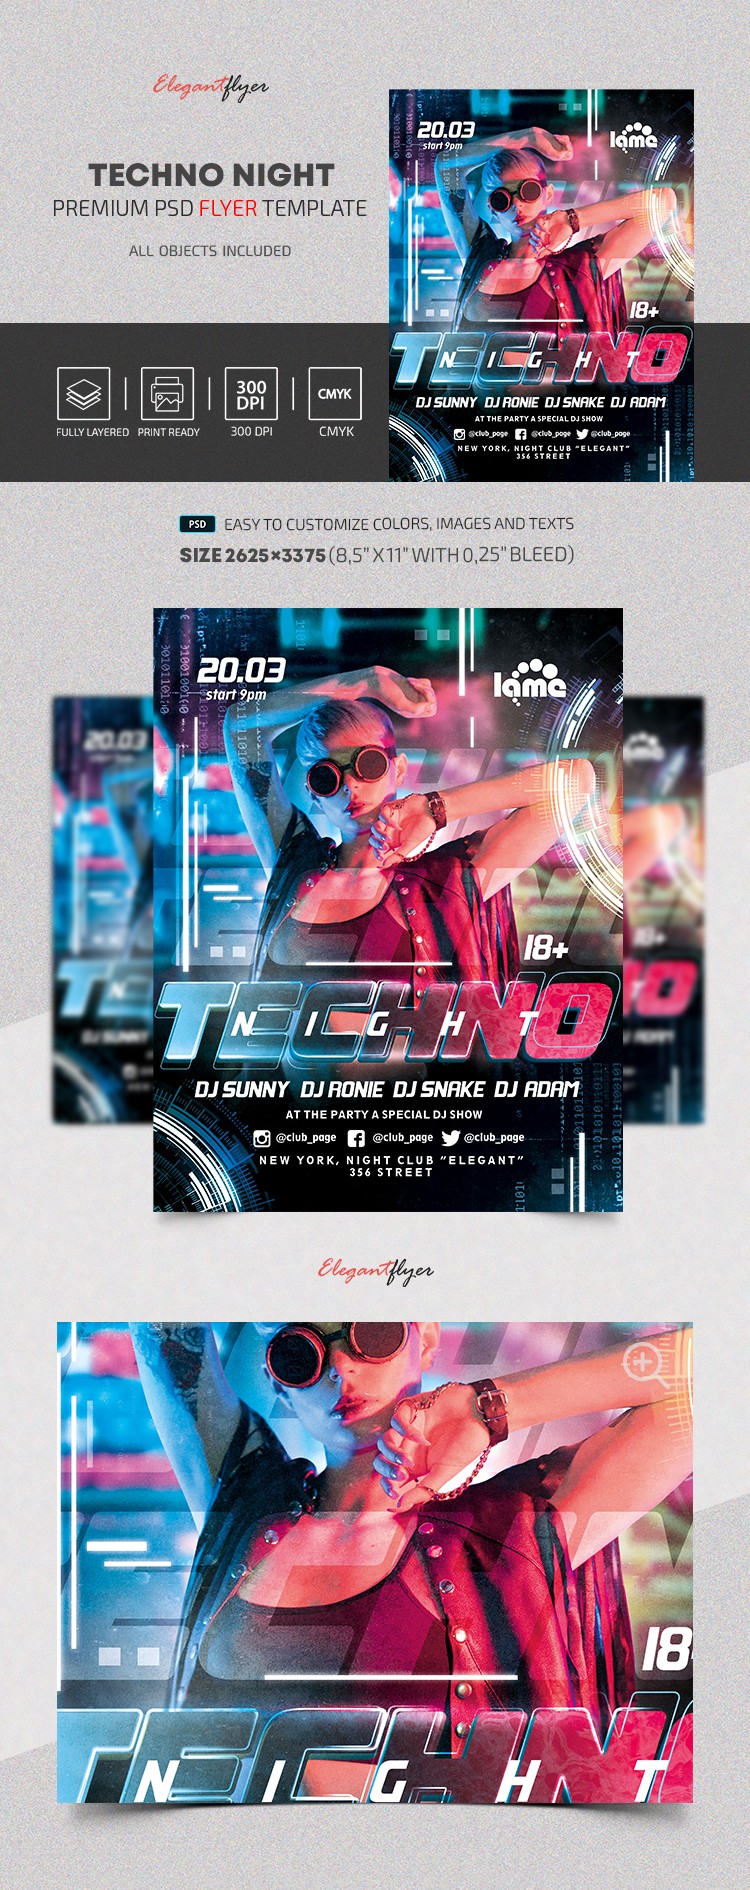 Techno Night Flyer by ElegantFlyer